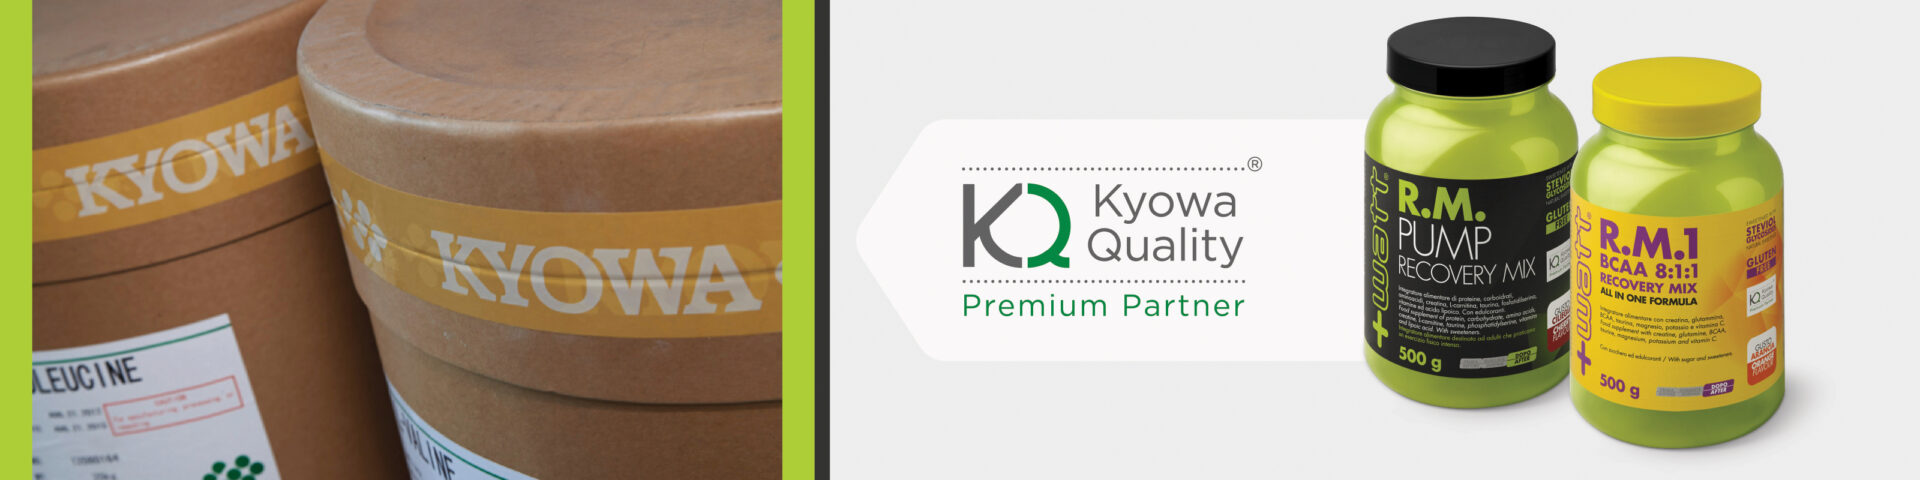 Kyowa Premium Partner